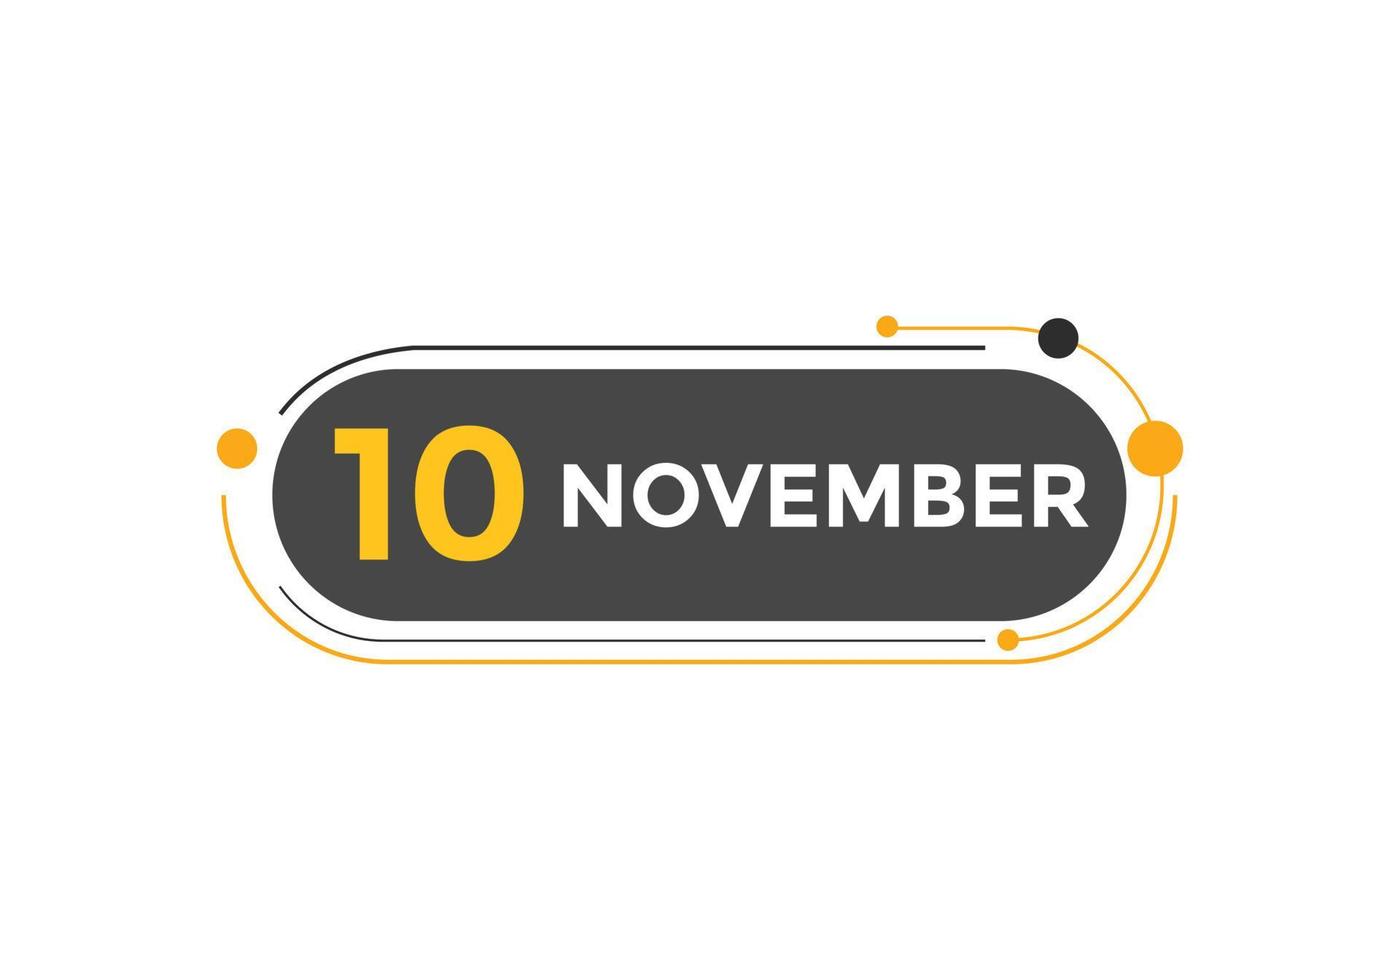 Recordatorio del calendario del 10 de noviembre. Plantilla de icono de calendario diario del 10 de noviembre. plantilla de diseño de icono de calendario 10 de noviembre. ilustración vectorial vector